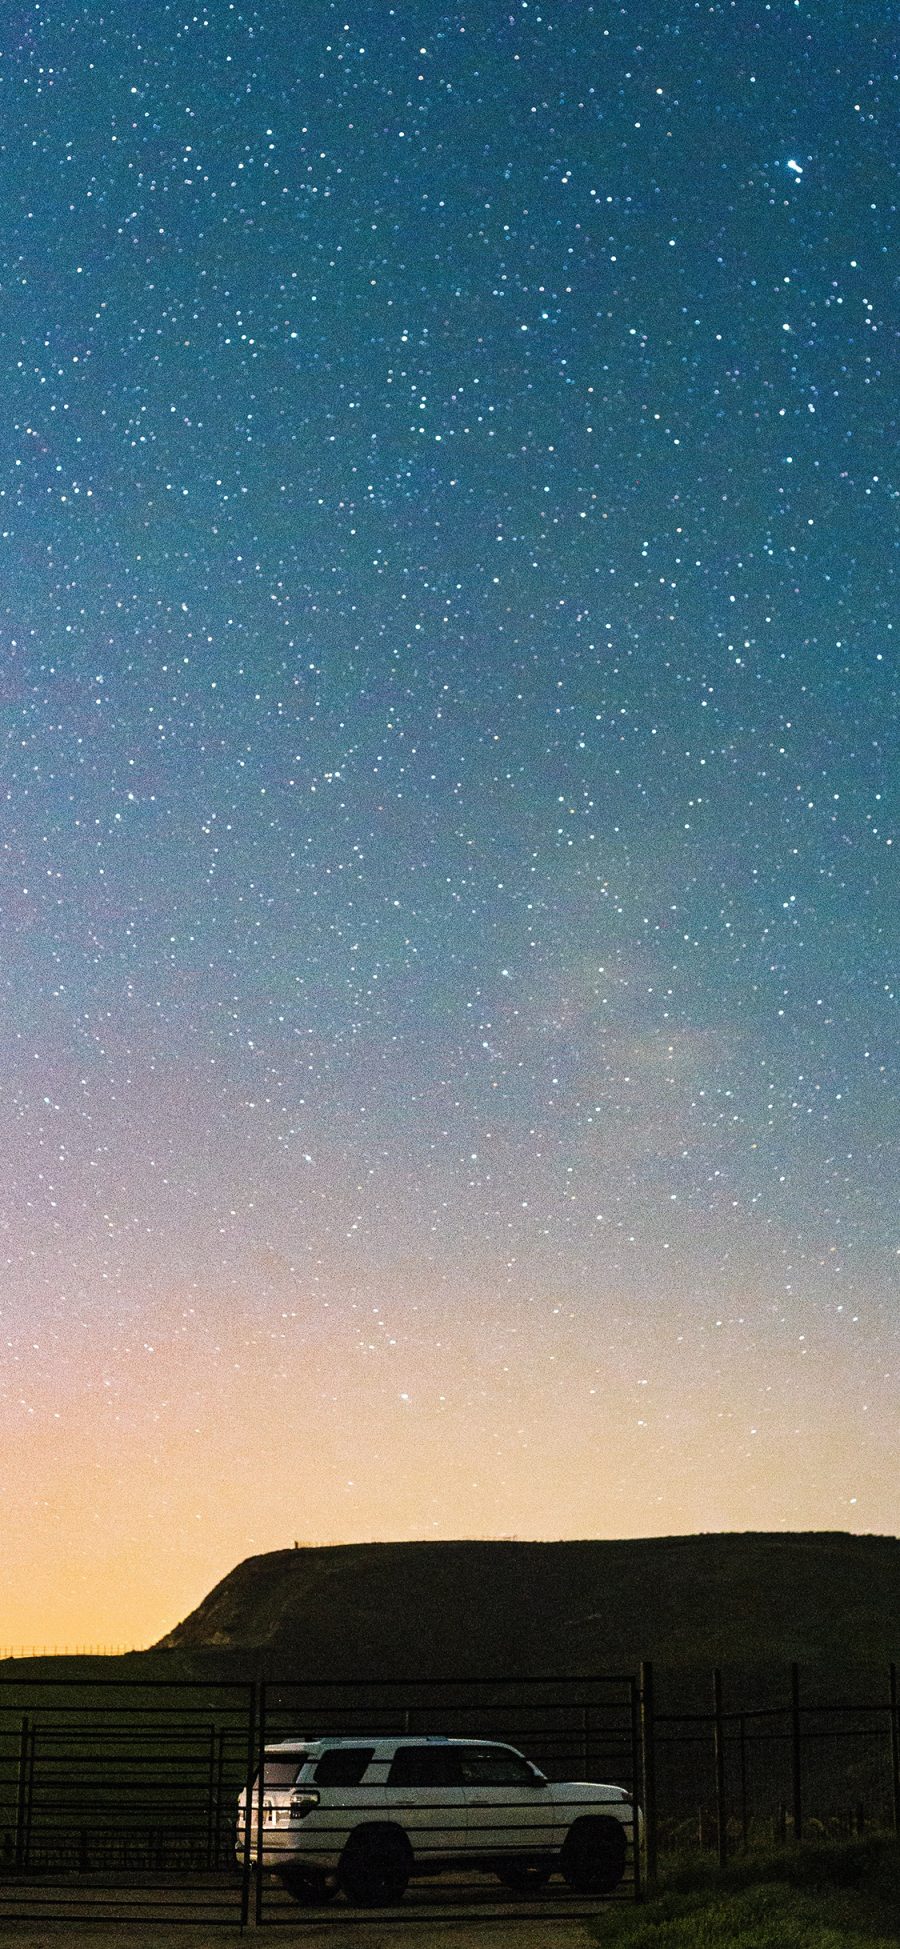 [2436×1125]夜景 星空 汽车 寂静 苹果手机壁纸图片